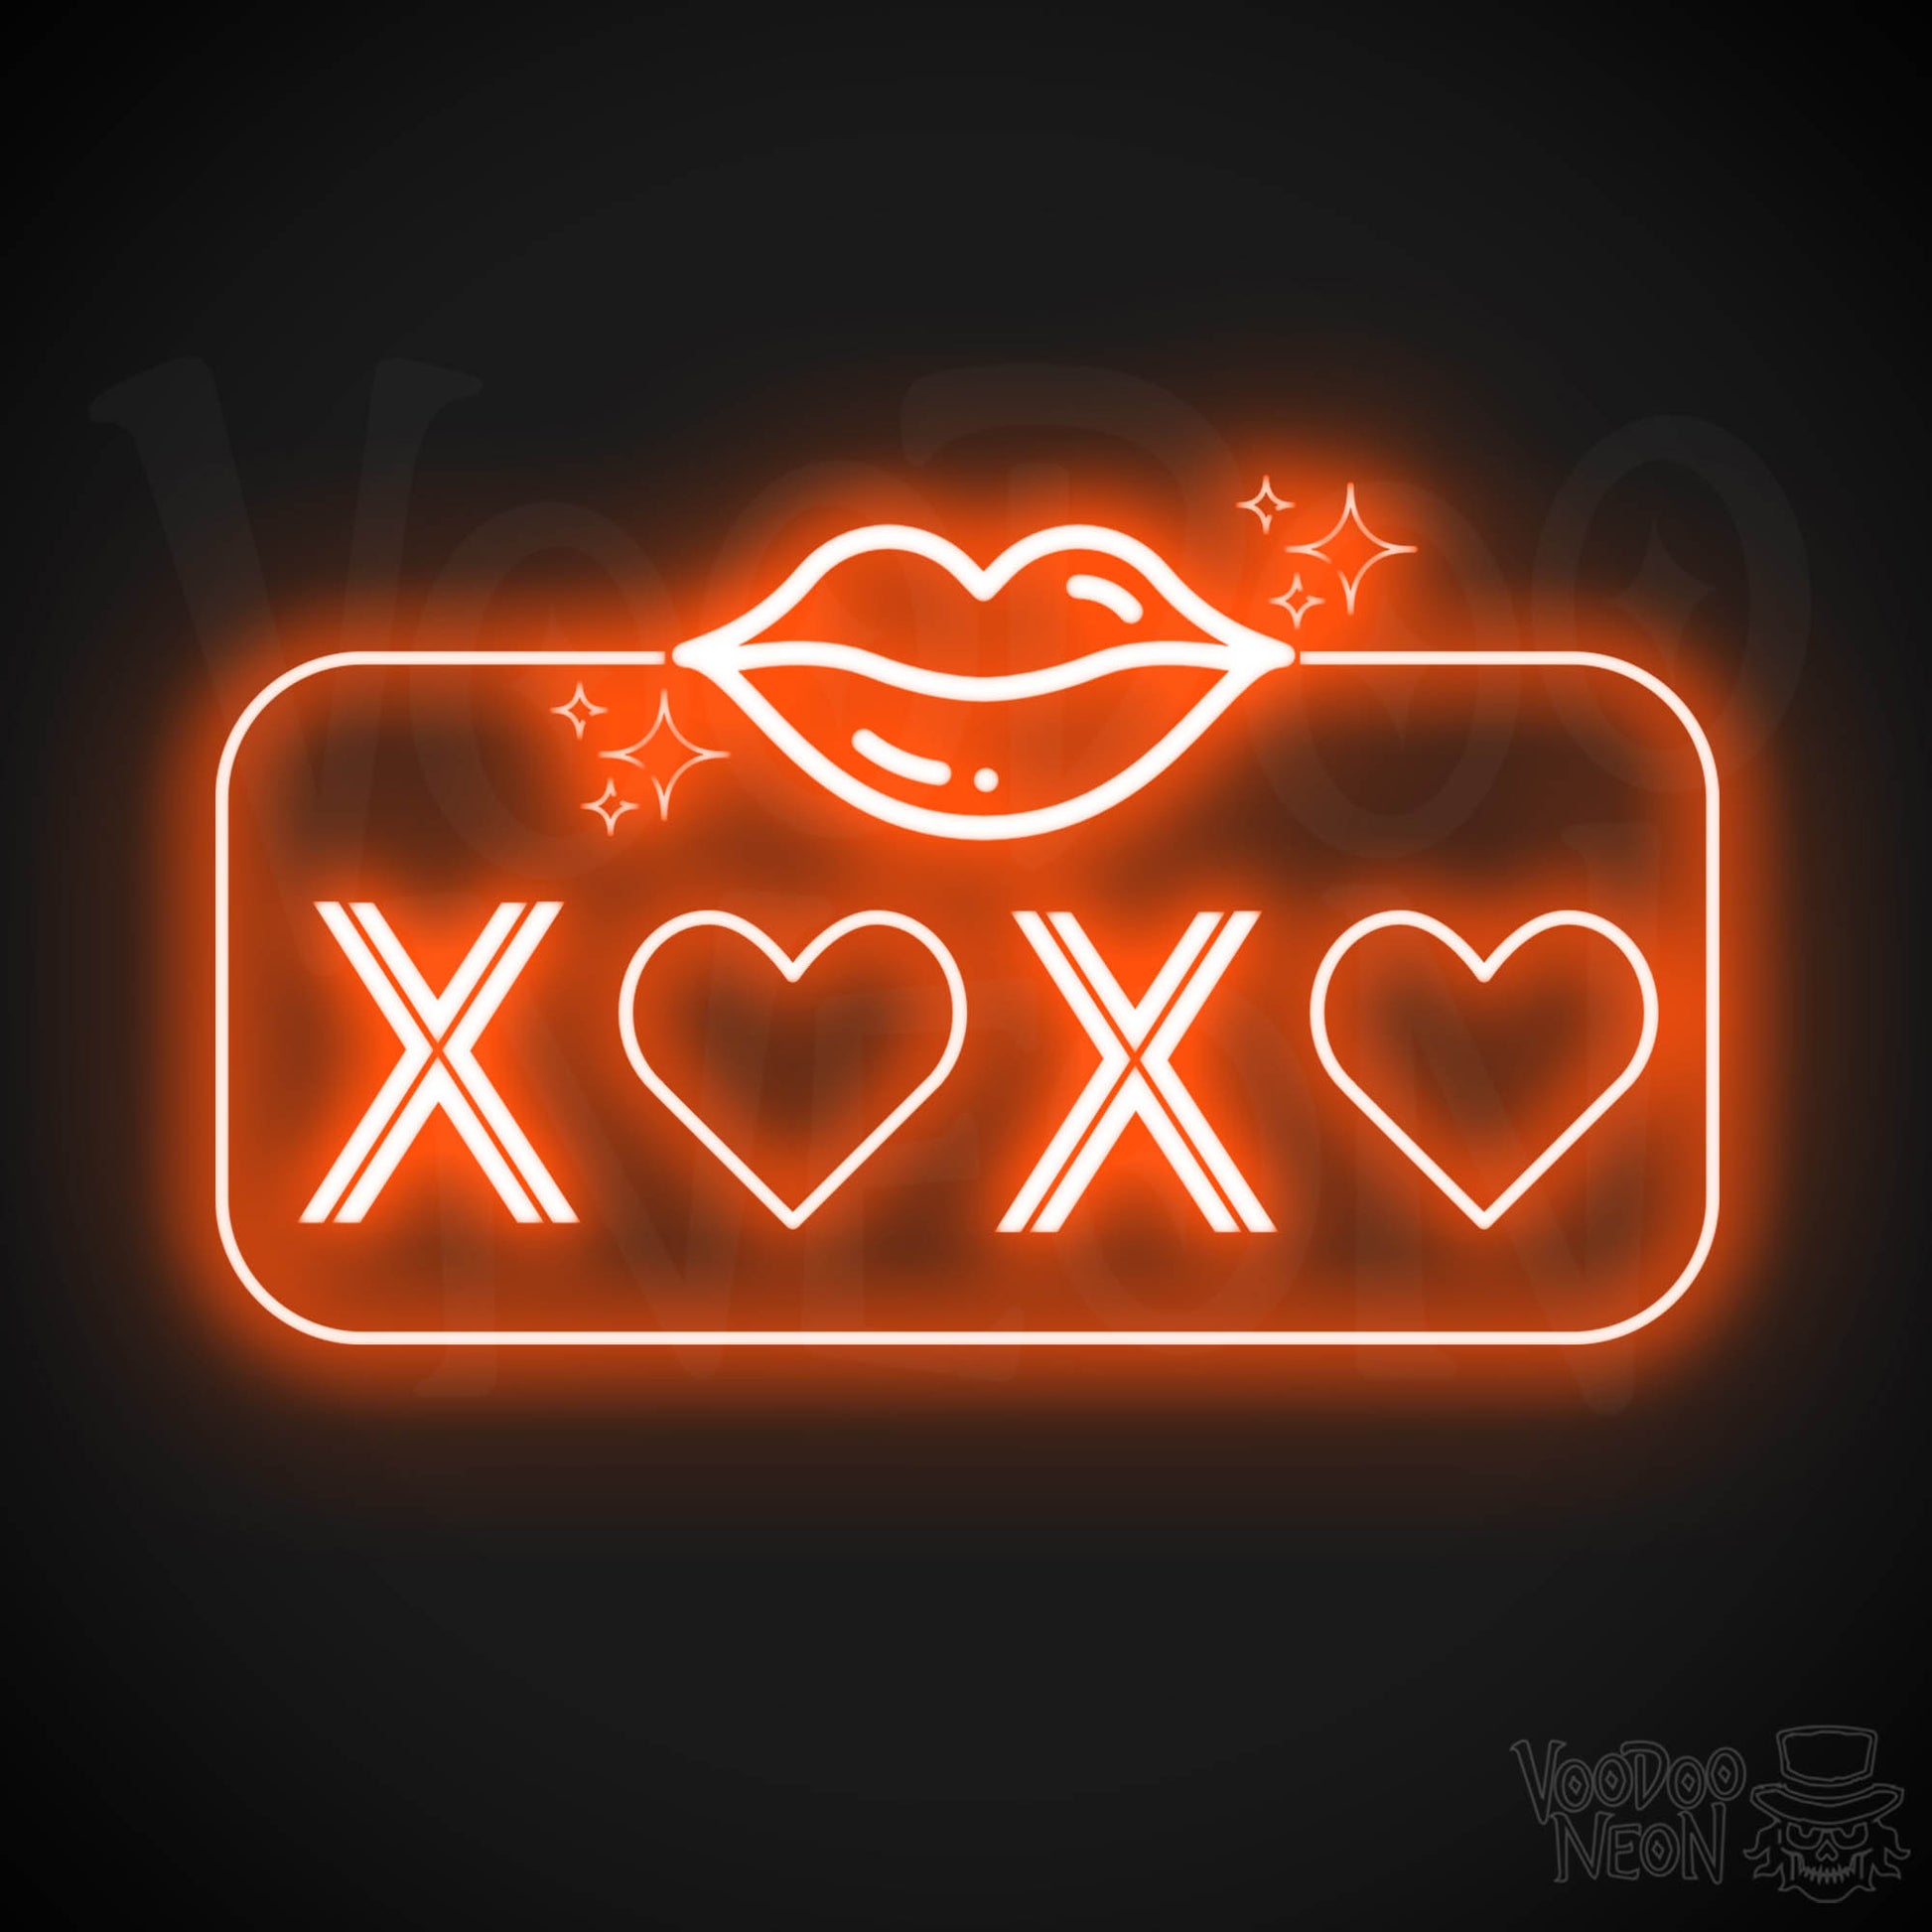 Xoxo Neon Sign - Neon XOXO - Kiss Hug Neon Wall Art - Color Orange